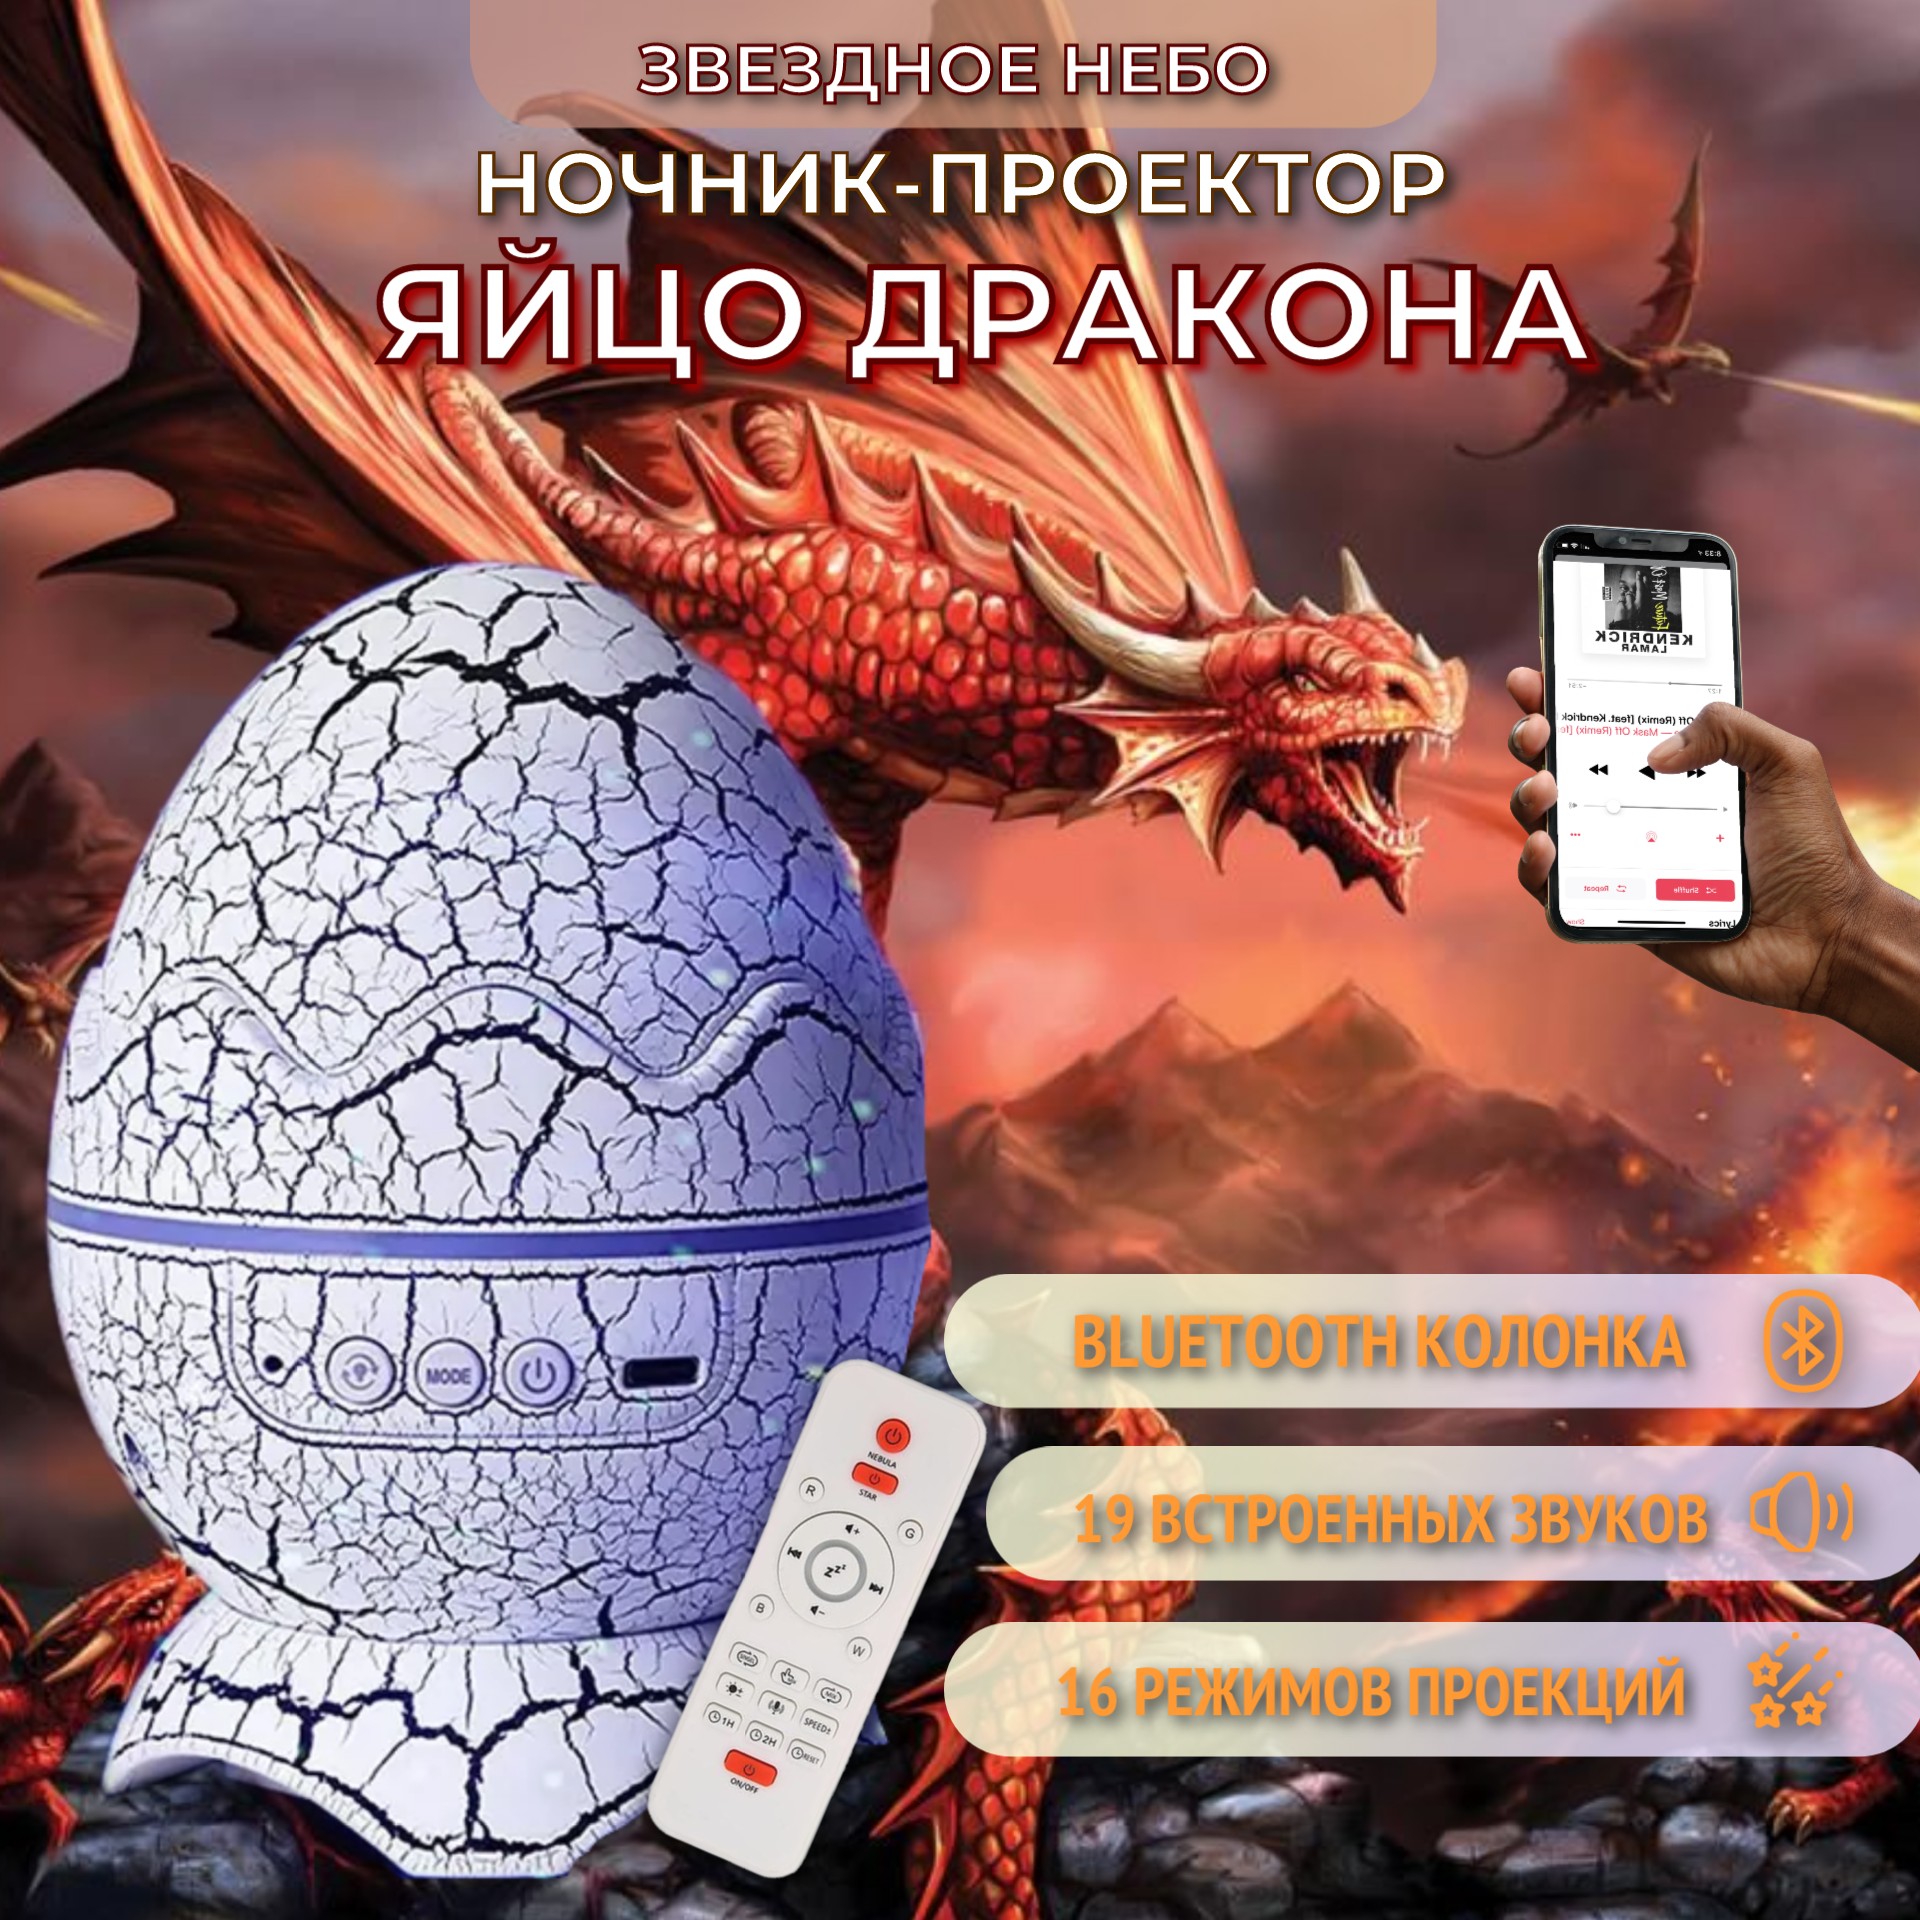 Ночник-проектор Торговая федерация Яйцо дракона Bluetooth, белый, 3кн ночник проектор bashexpo яйцо дракона с bluetooth ной 4кн